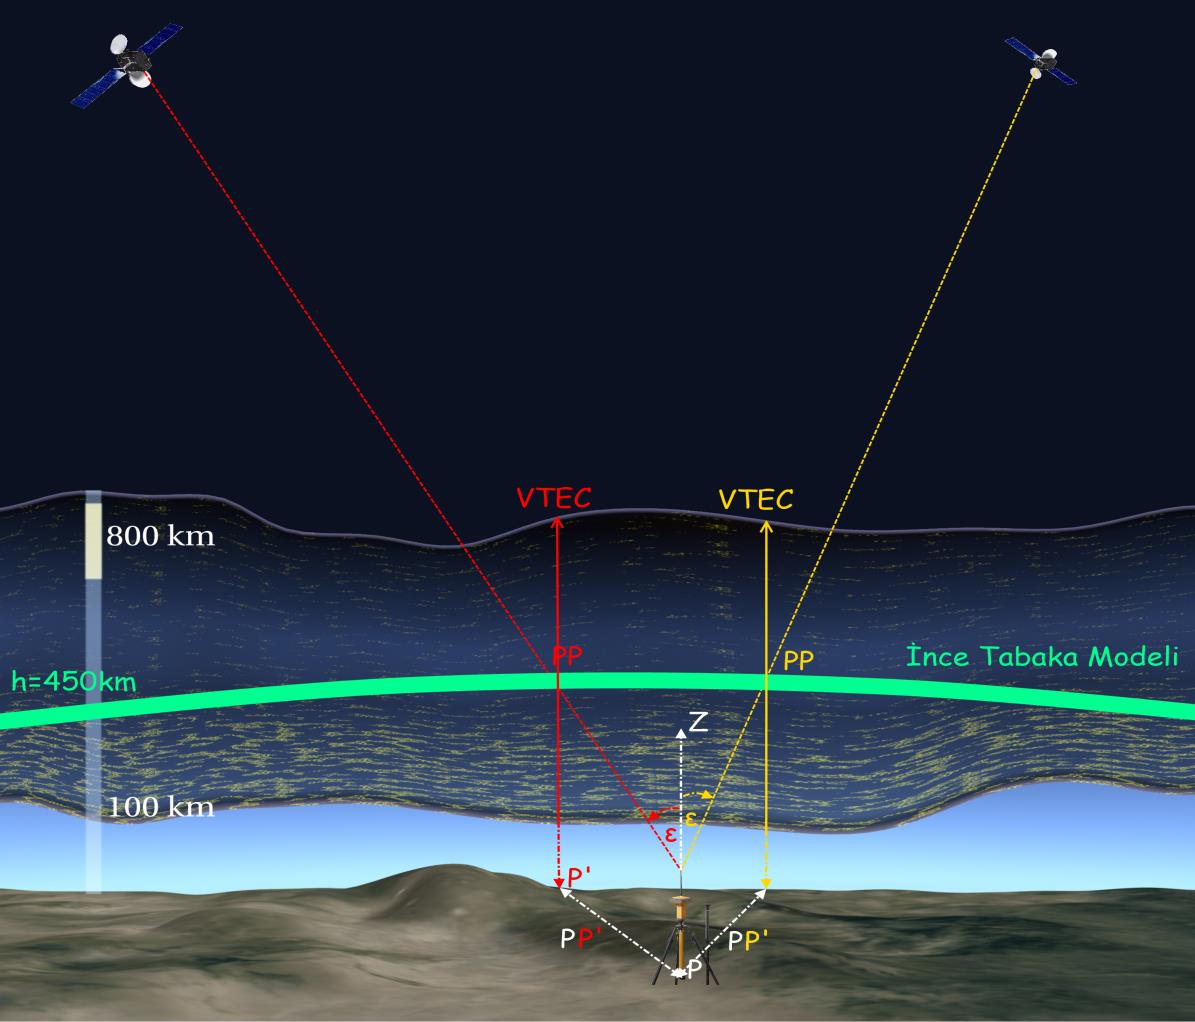 TEİ Hesabında Kalite Ölçütleri Uydu Yükselme Açısının Etkisi Uydu yükselme açısı yalnızca uydunun ufuktaki yüksekliğini değil aynı zamanda uydu ile alıcı arasındaki sinyalin iyonosferi kestiği